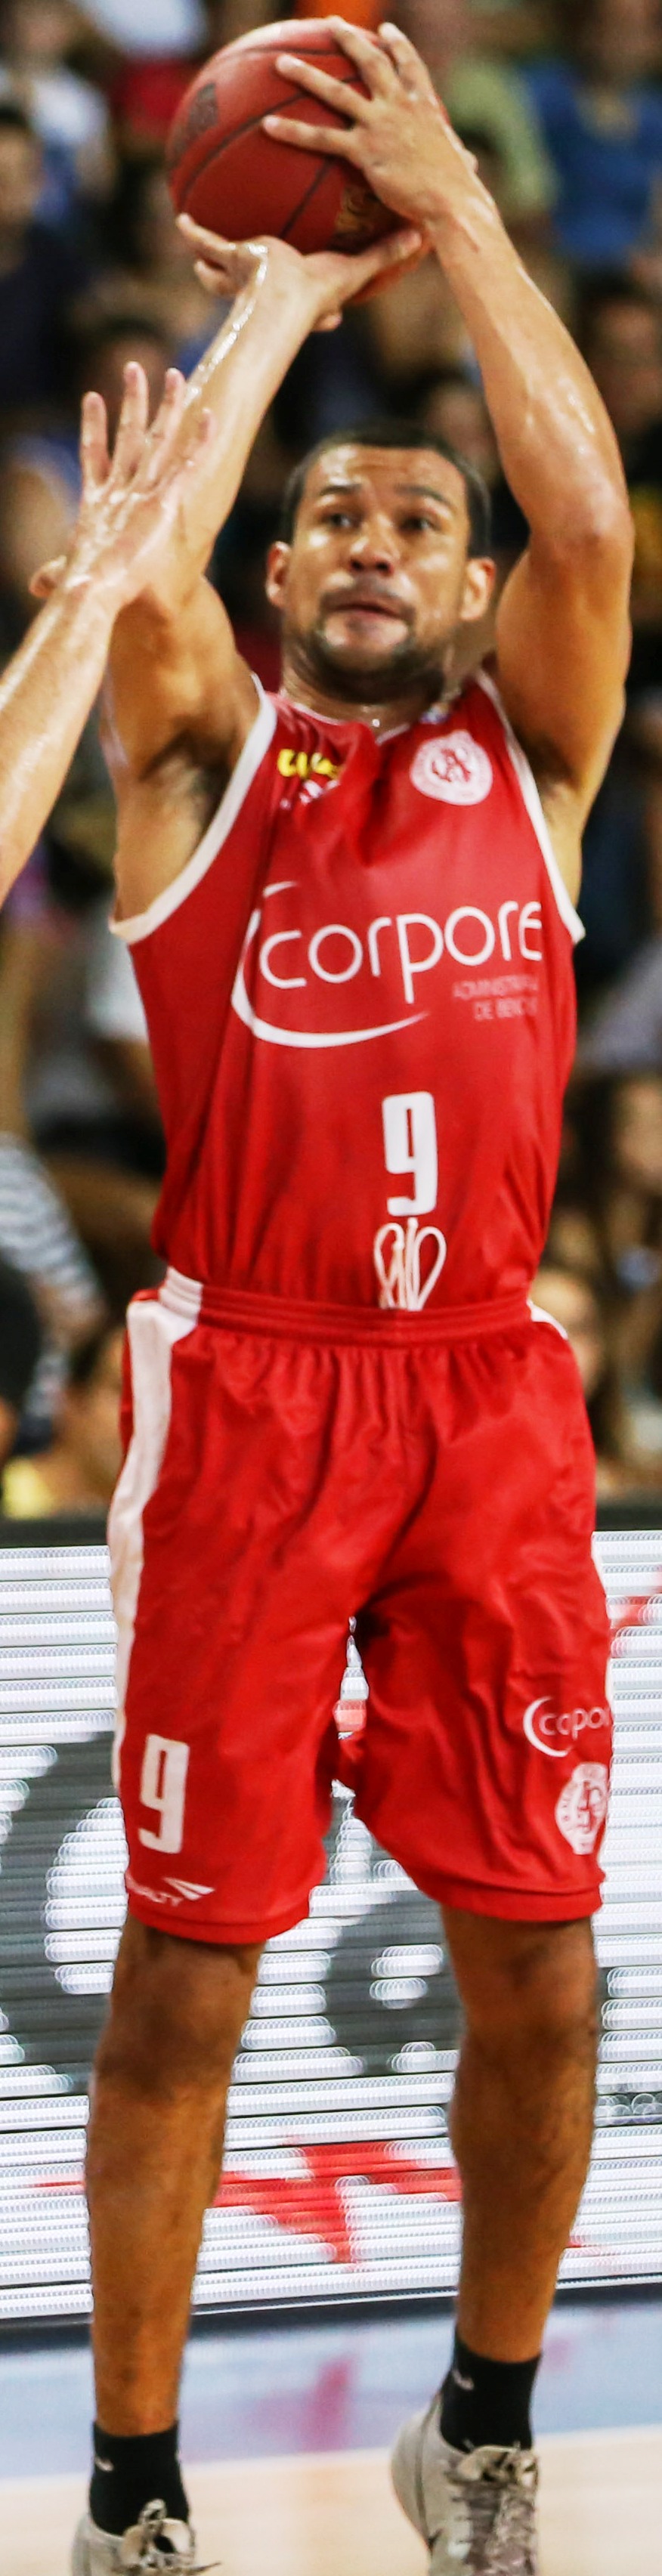 Valtinho será o terceiro atleta com 1400 assistências na história do NBB CAIXA (Caio Casagrande/Bauru Basket)